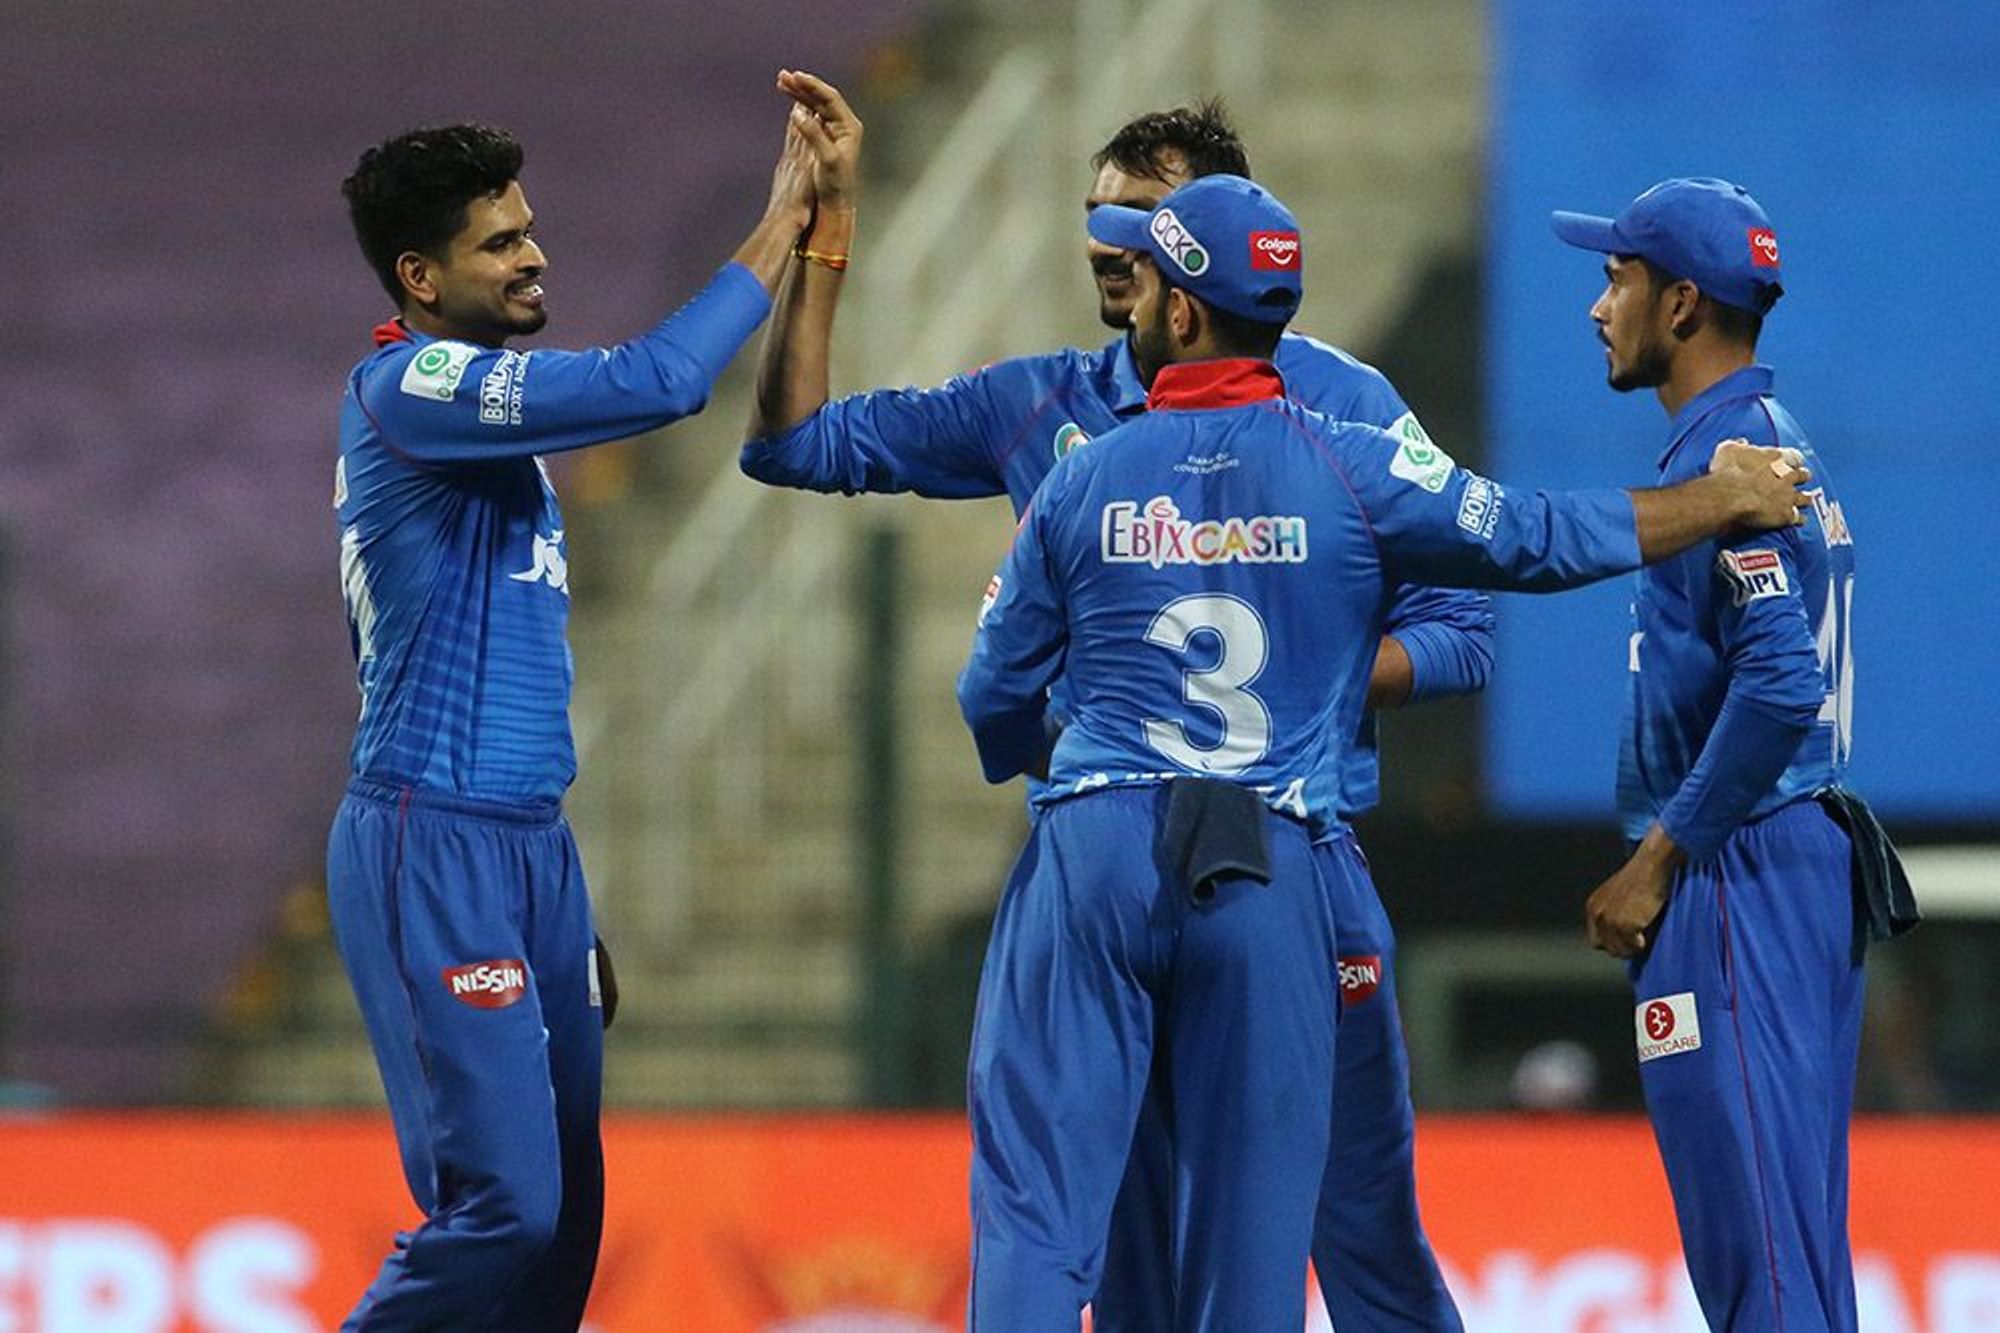 प्ले-ऑफ्सच्या Qualifier 2मध्ये दिल्ली कॅपिटल्सने अप्रतिम लयीत असलेल्या हैदराबाद संघाला पराभवाची धूळ चाखण्यास भाग पाडले. (सर्व फोटो- IPL.com)